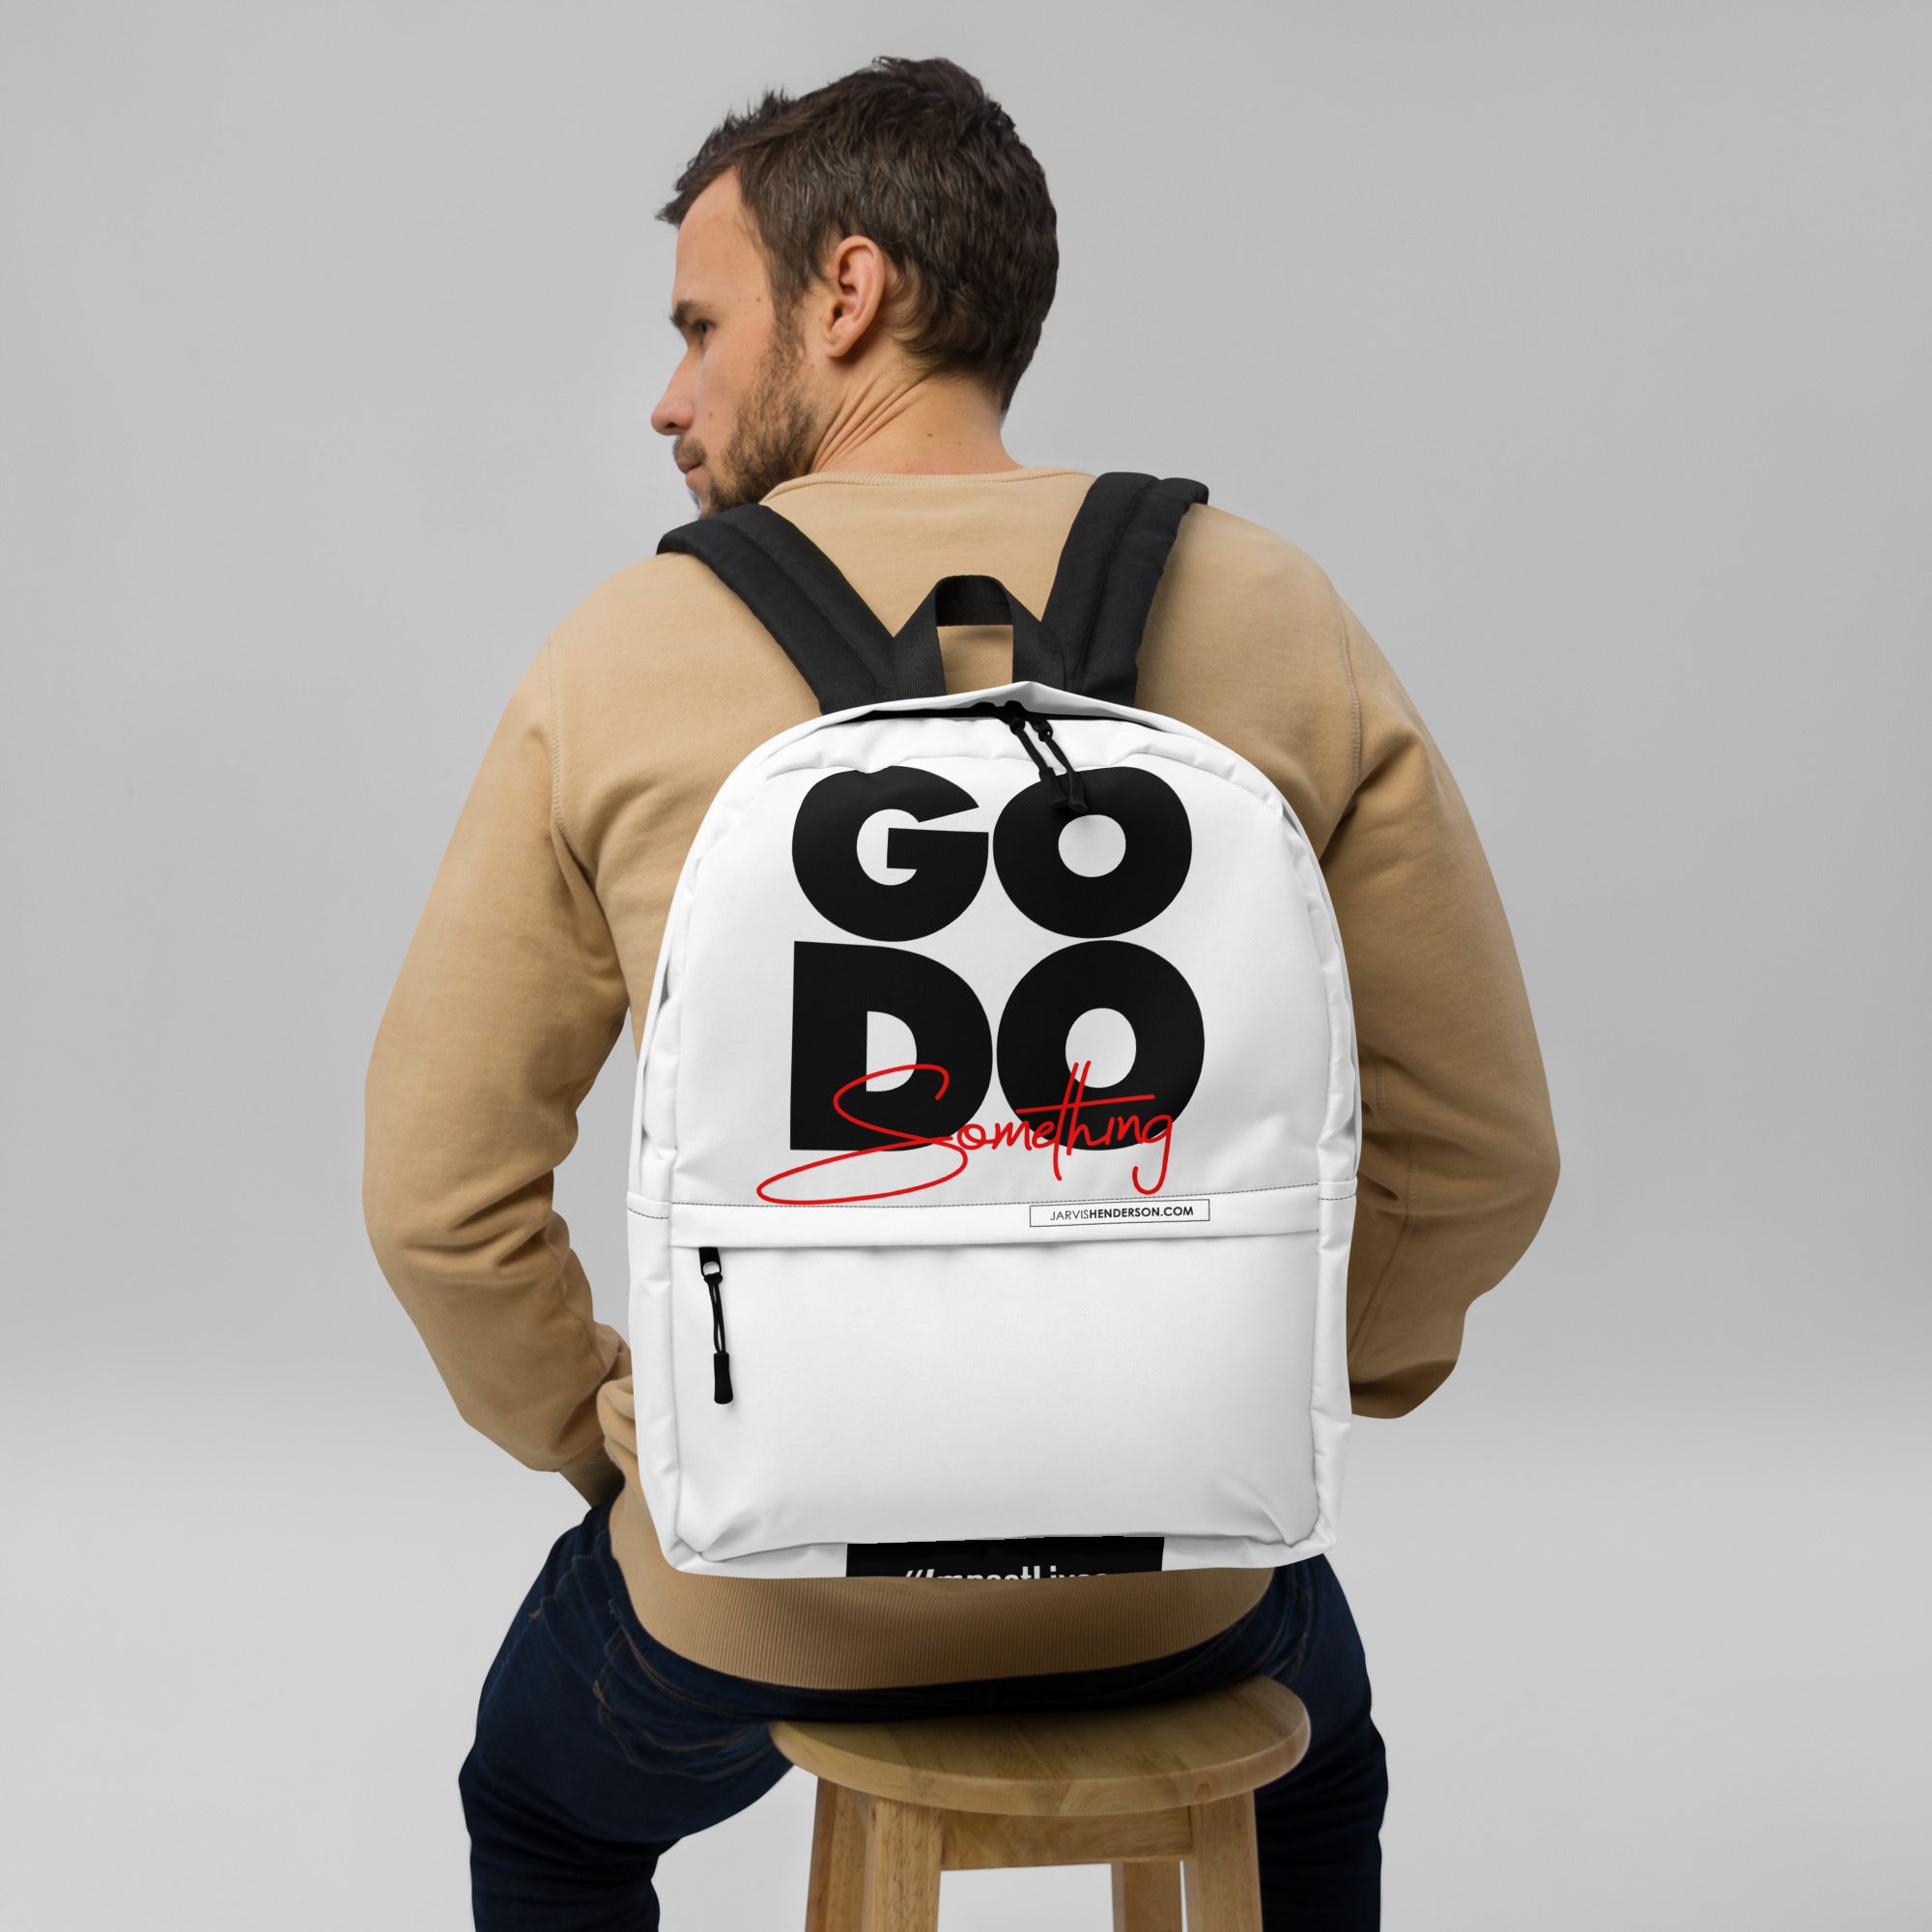 GoDoSomething Backpack